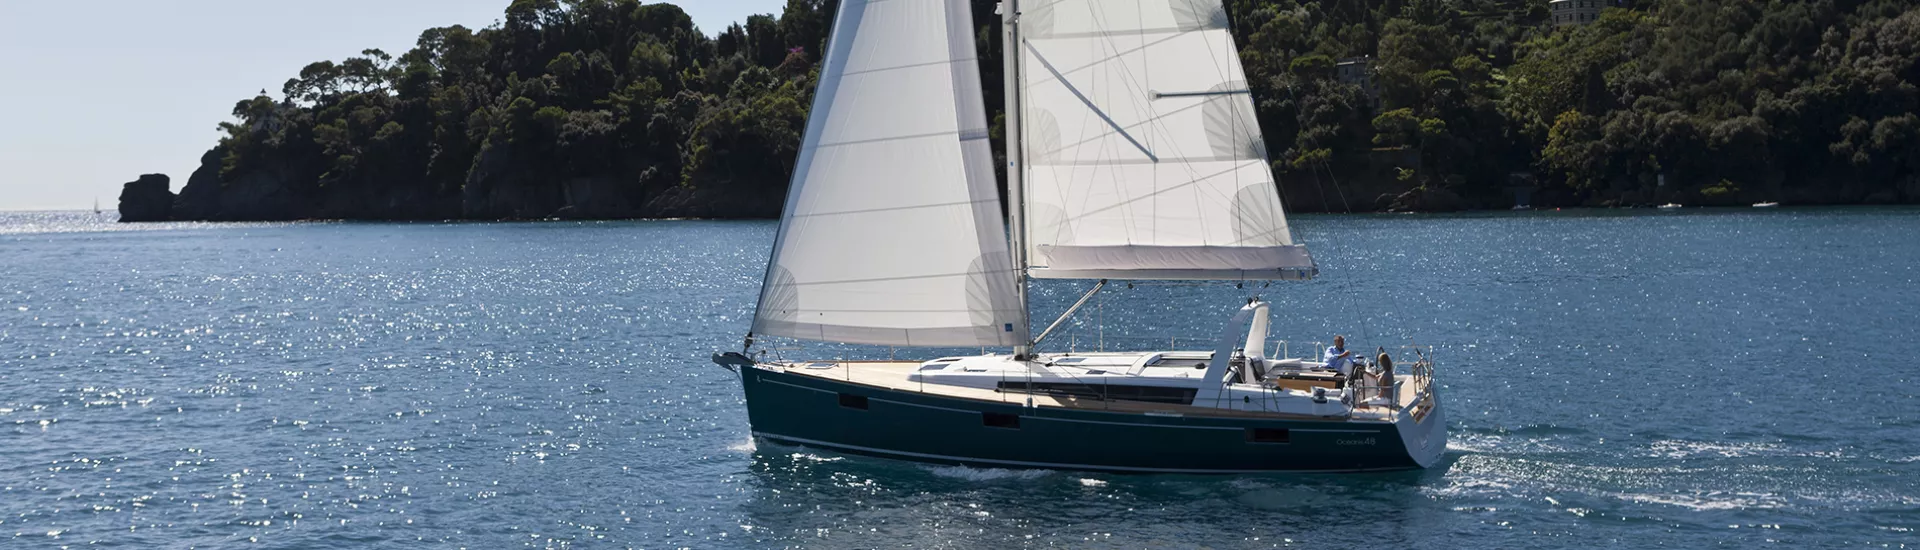 beneteau 48 sailboat for sale